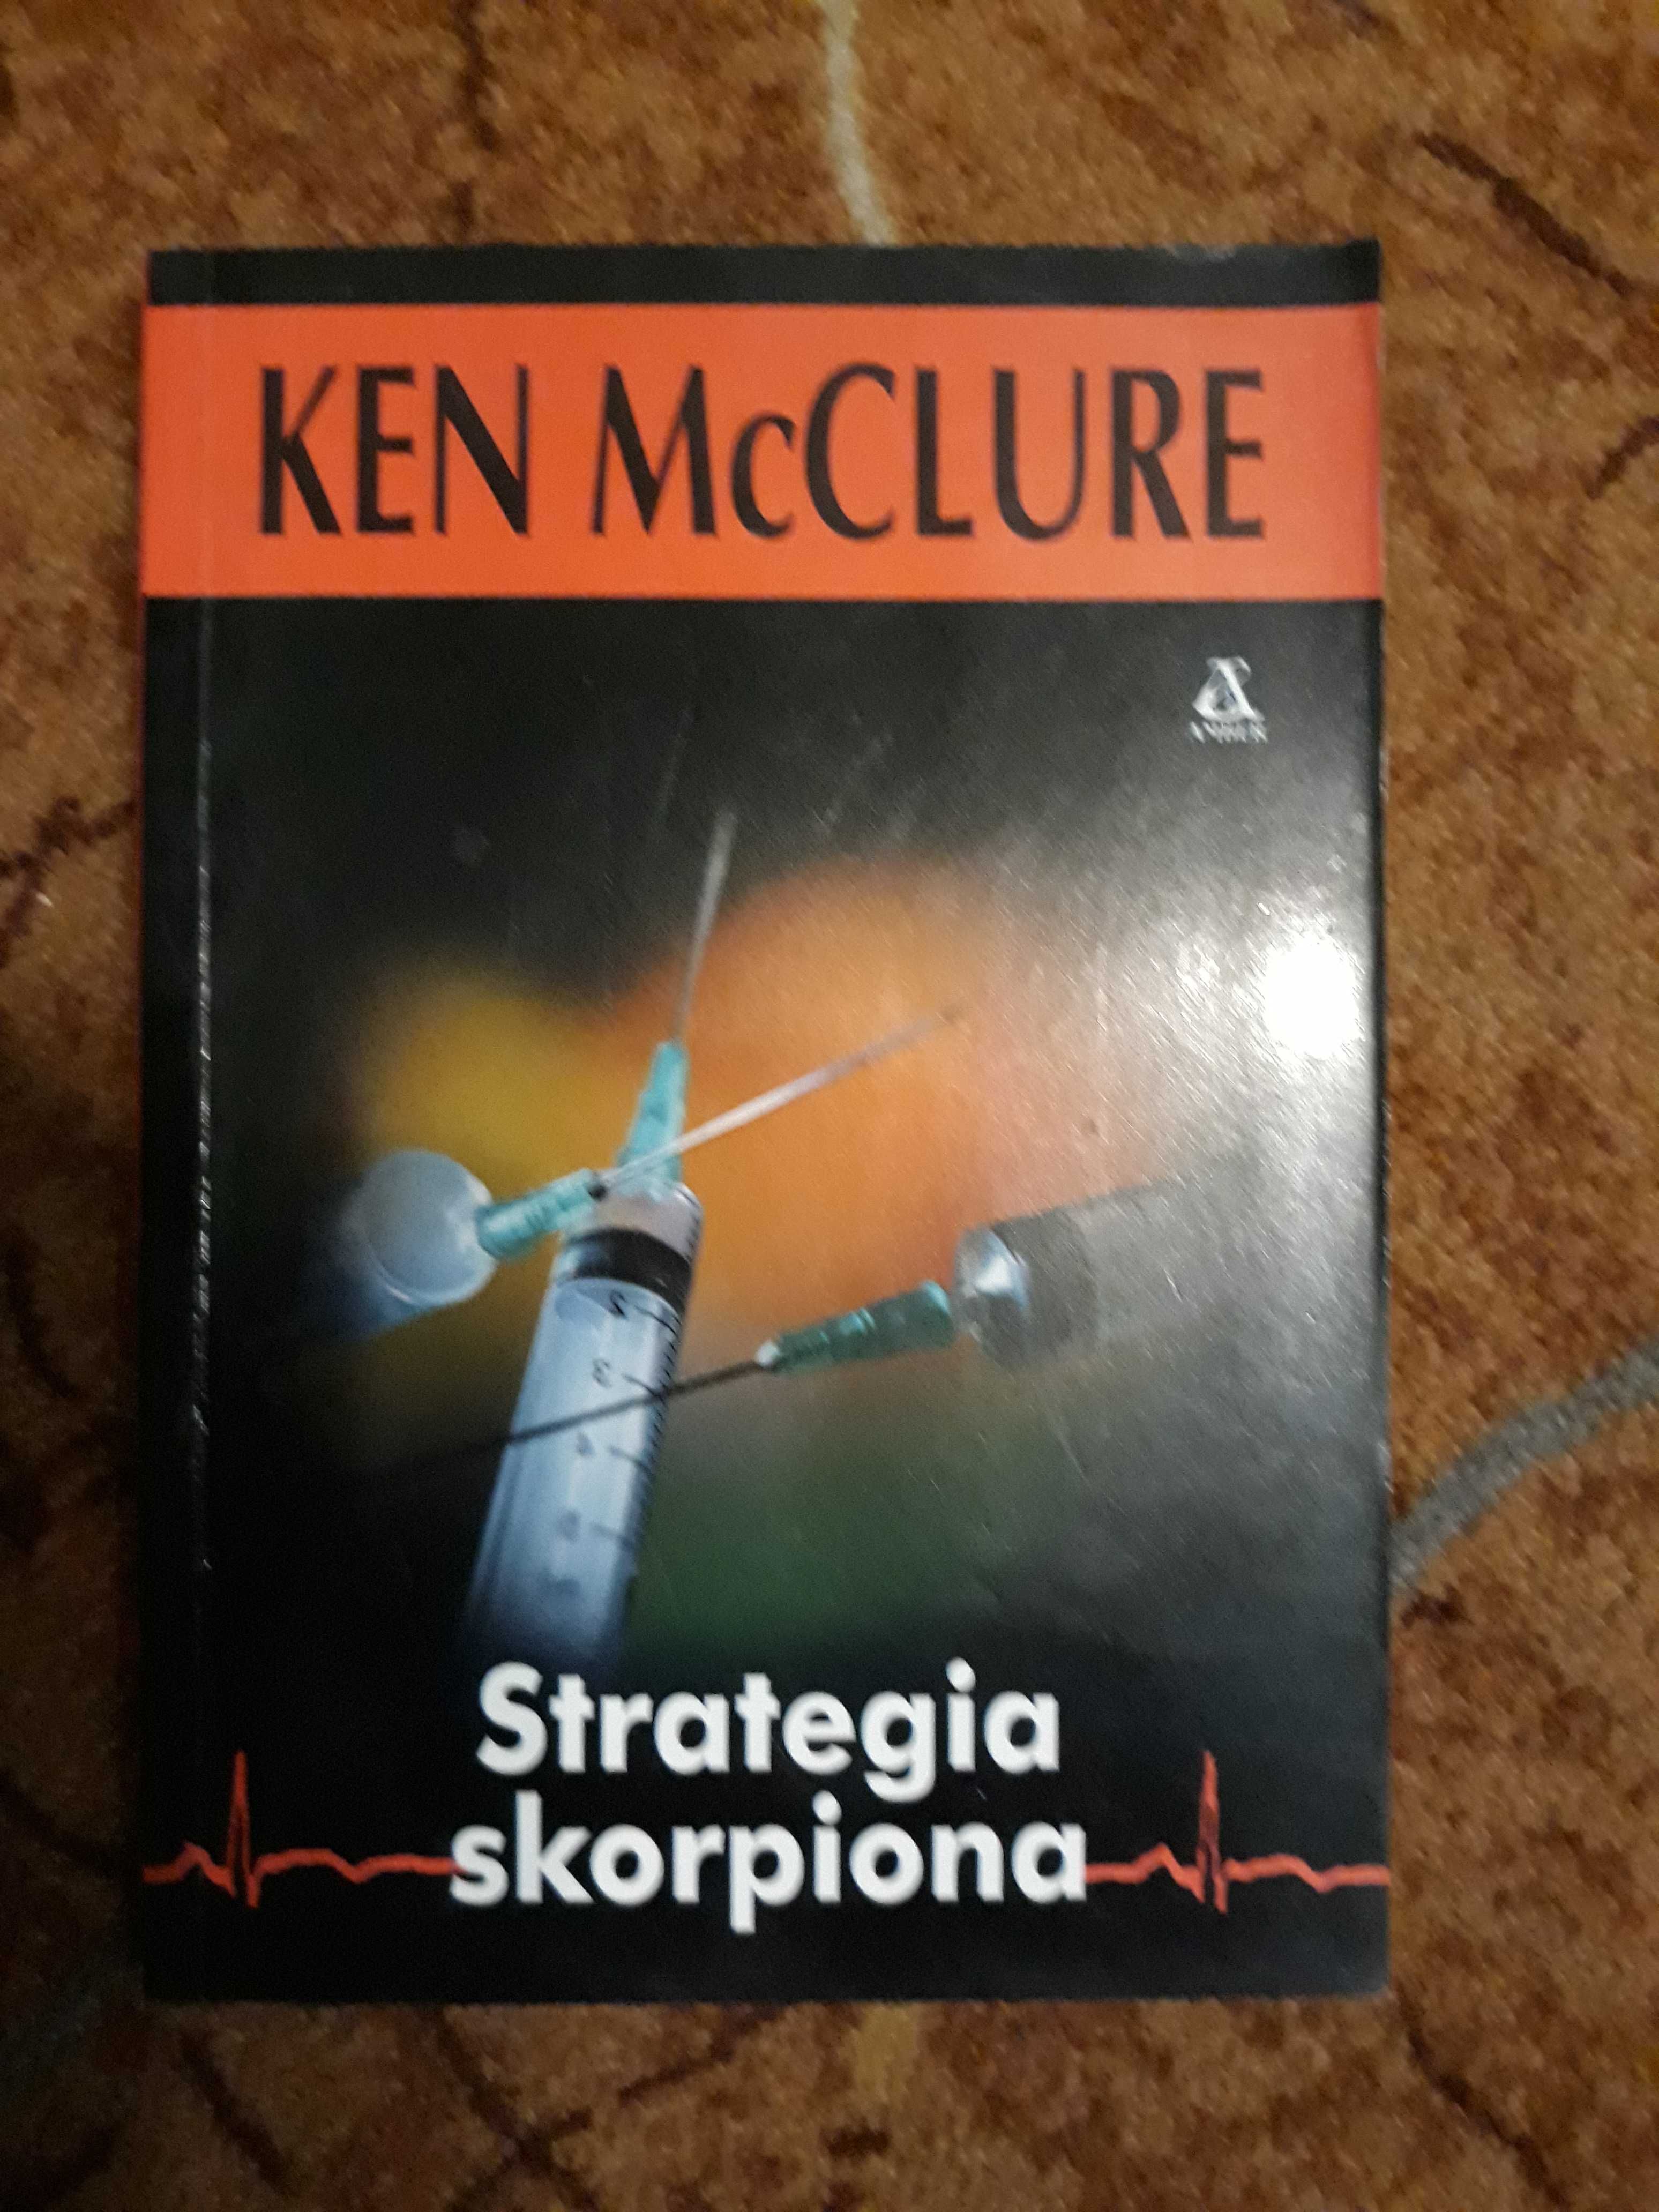 Ken McClure - Strategia skorpiona